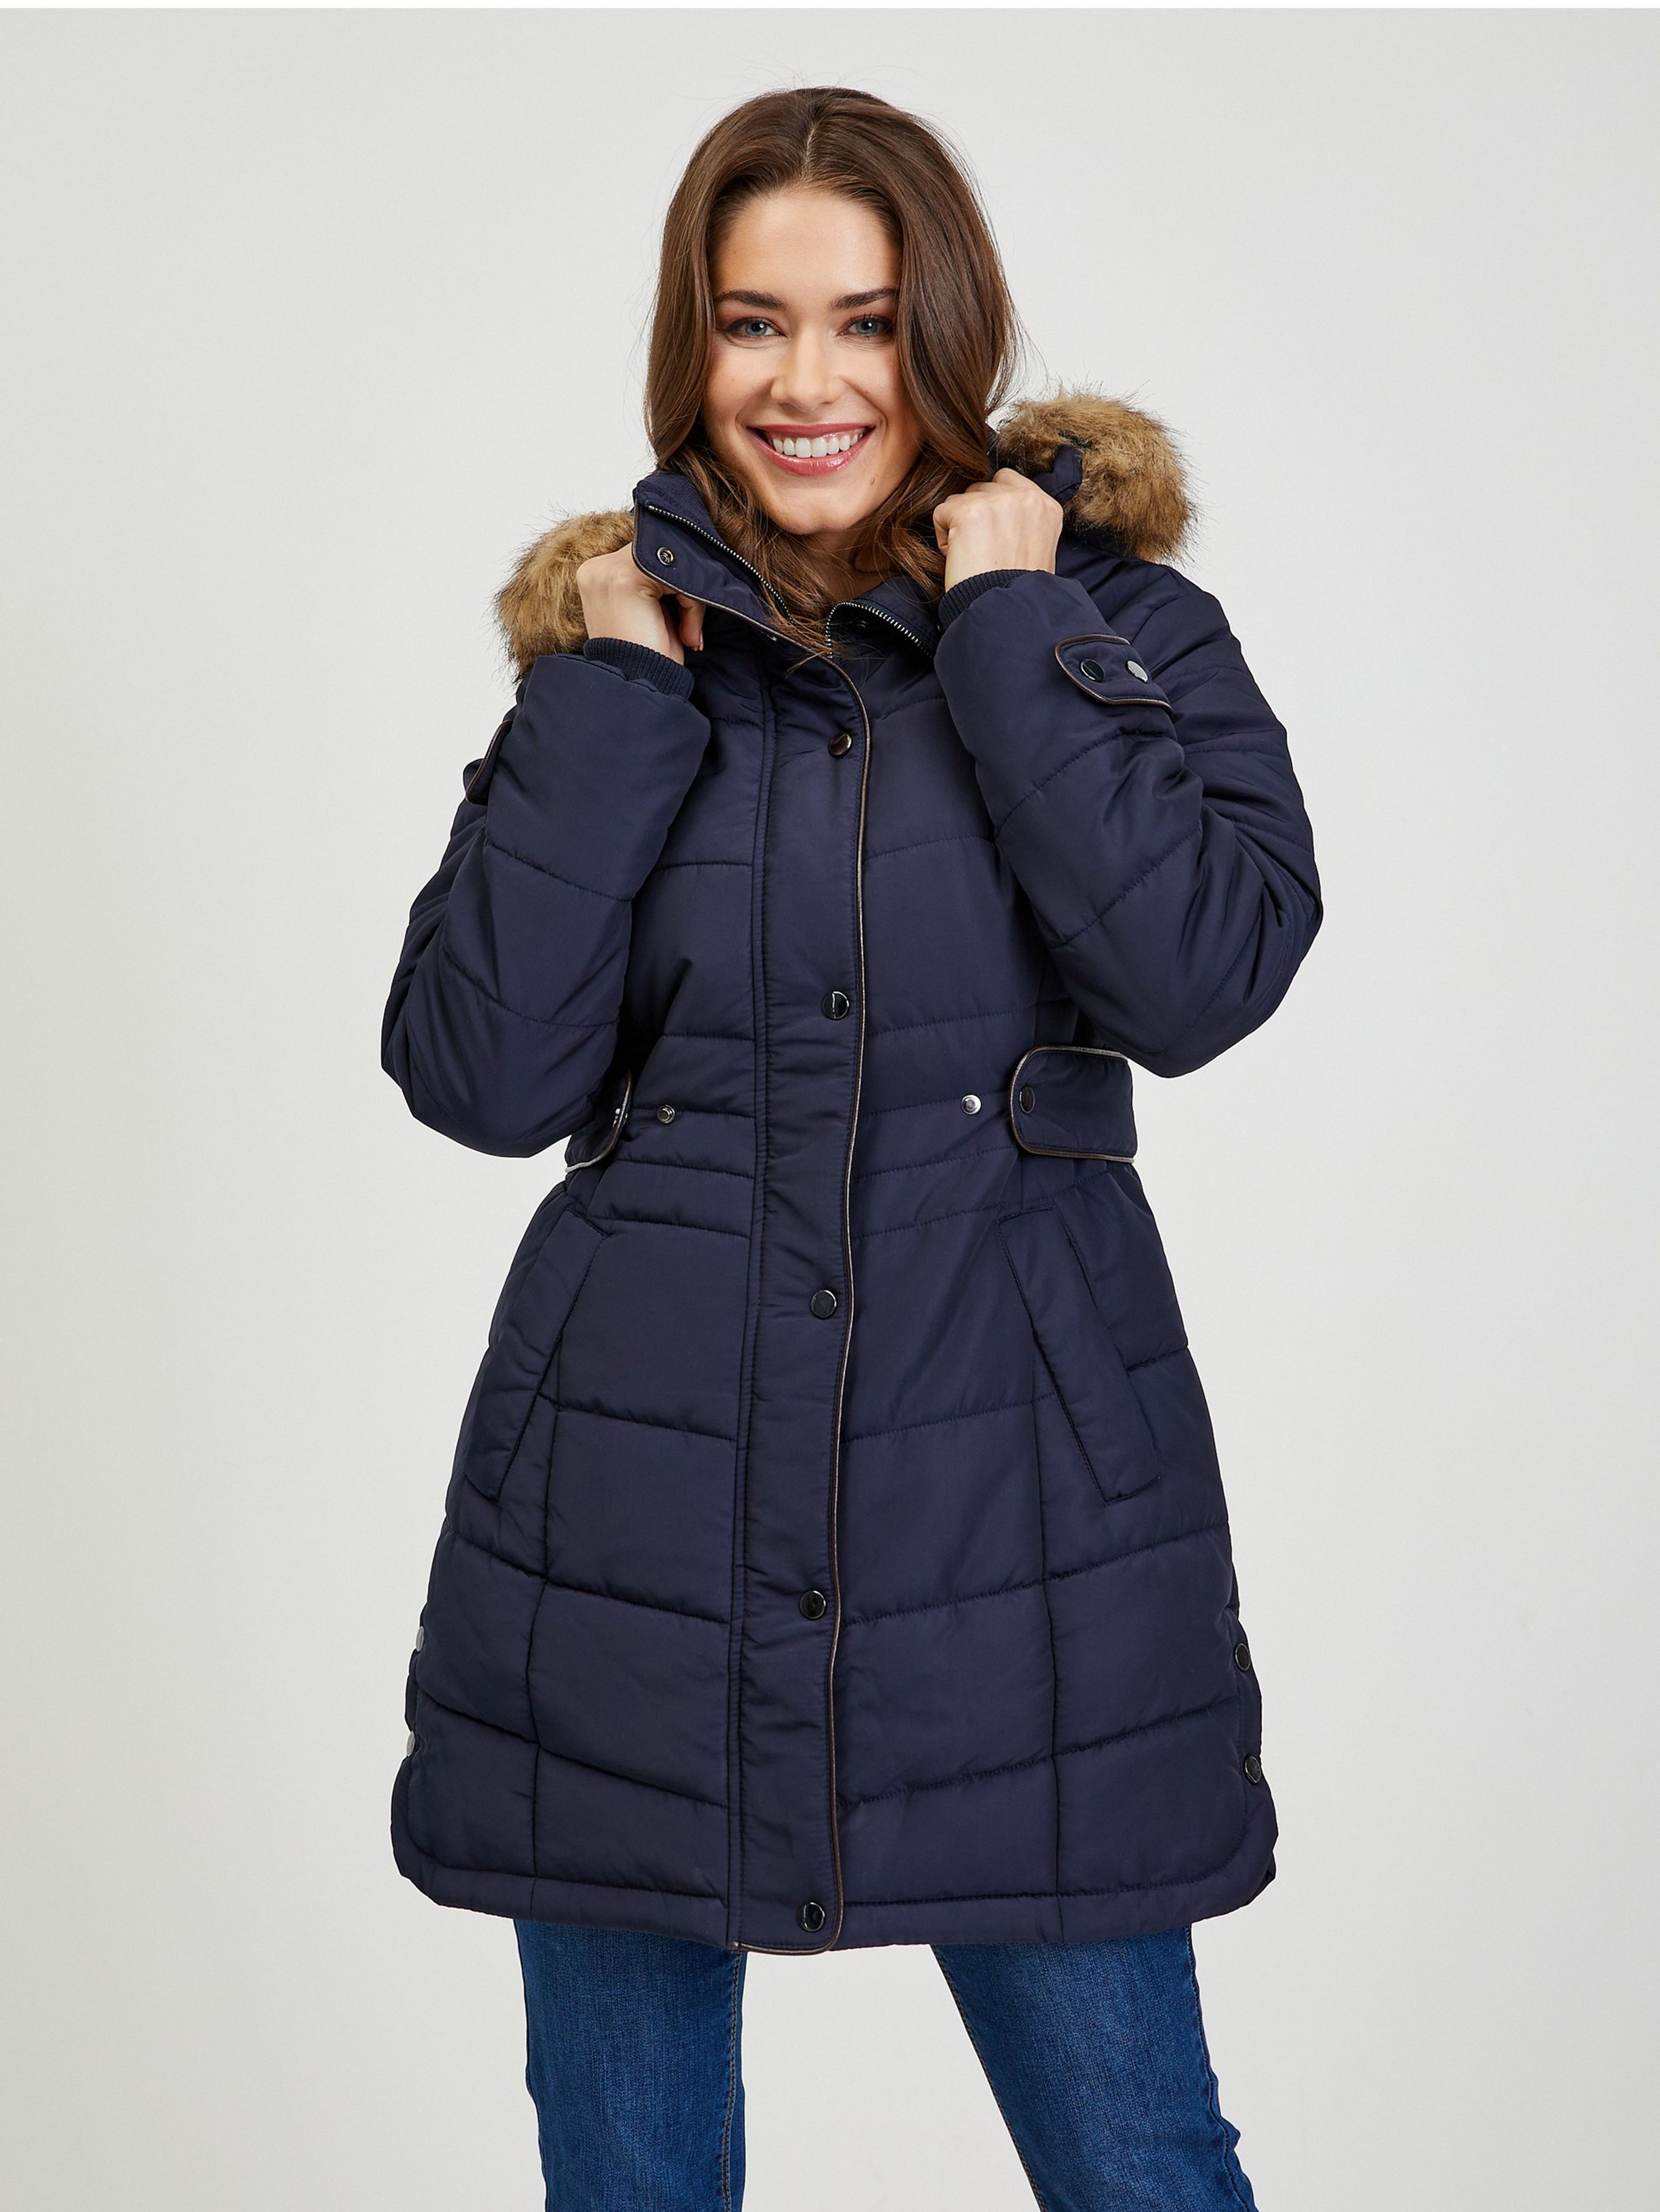 Tmavomodrý dámsky prešívaný zimný kabát s odnímateľnou kapucňou s kožušinou ORSAY